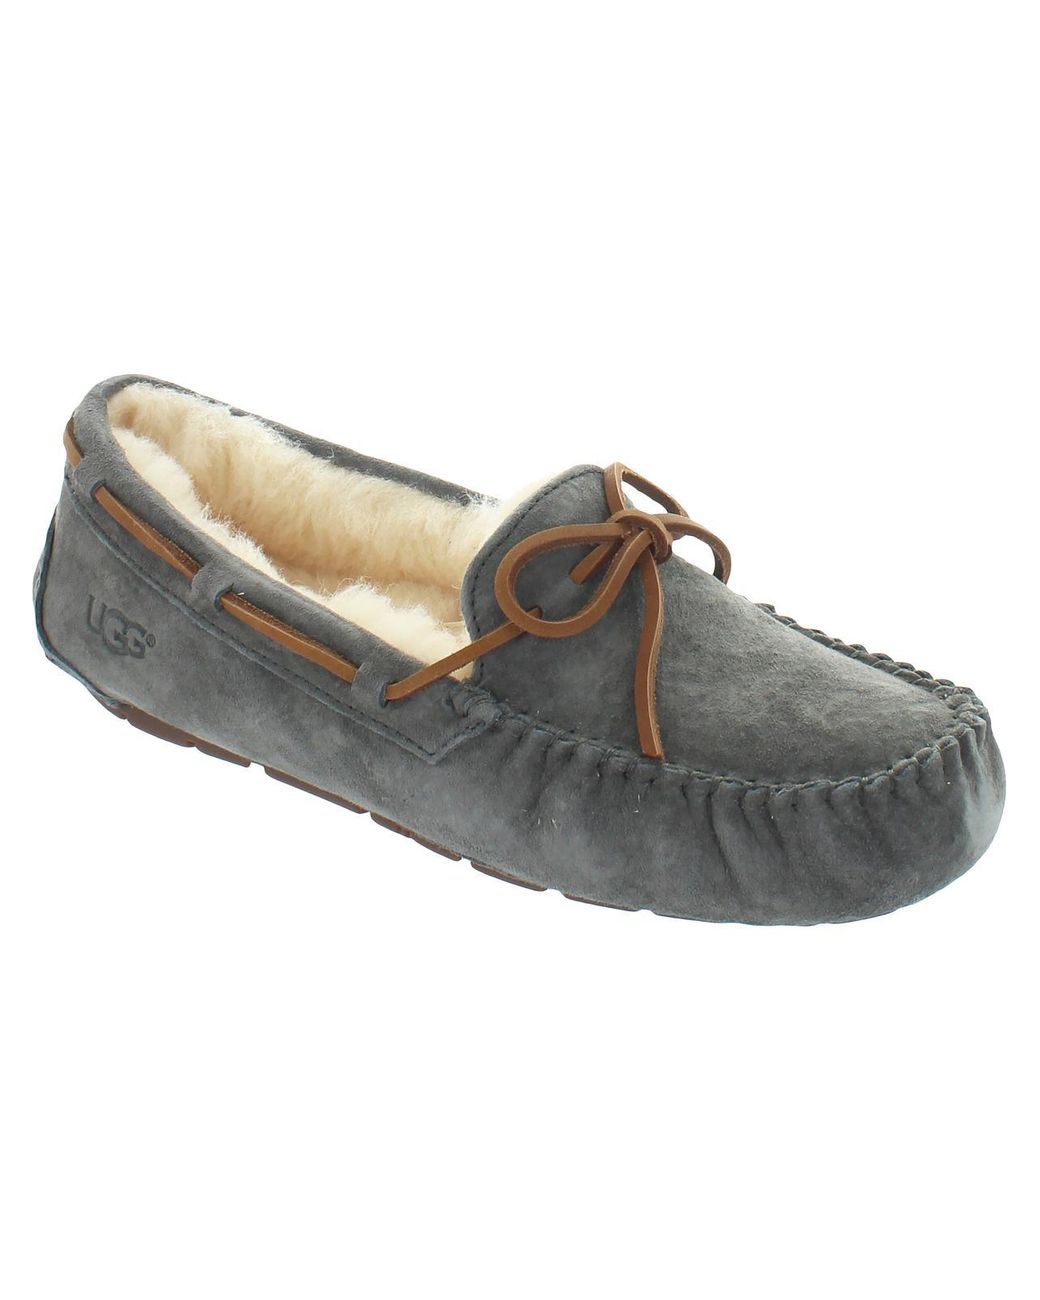 UGG Dakota Suede Sheepskin Lined Moccasin Slippers in Gray | Lyst